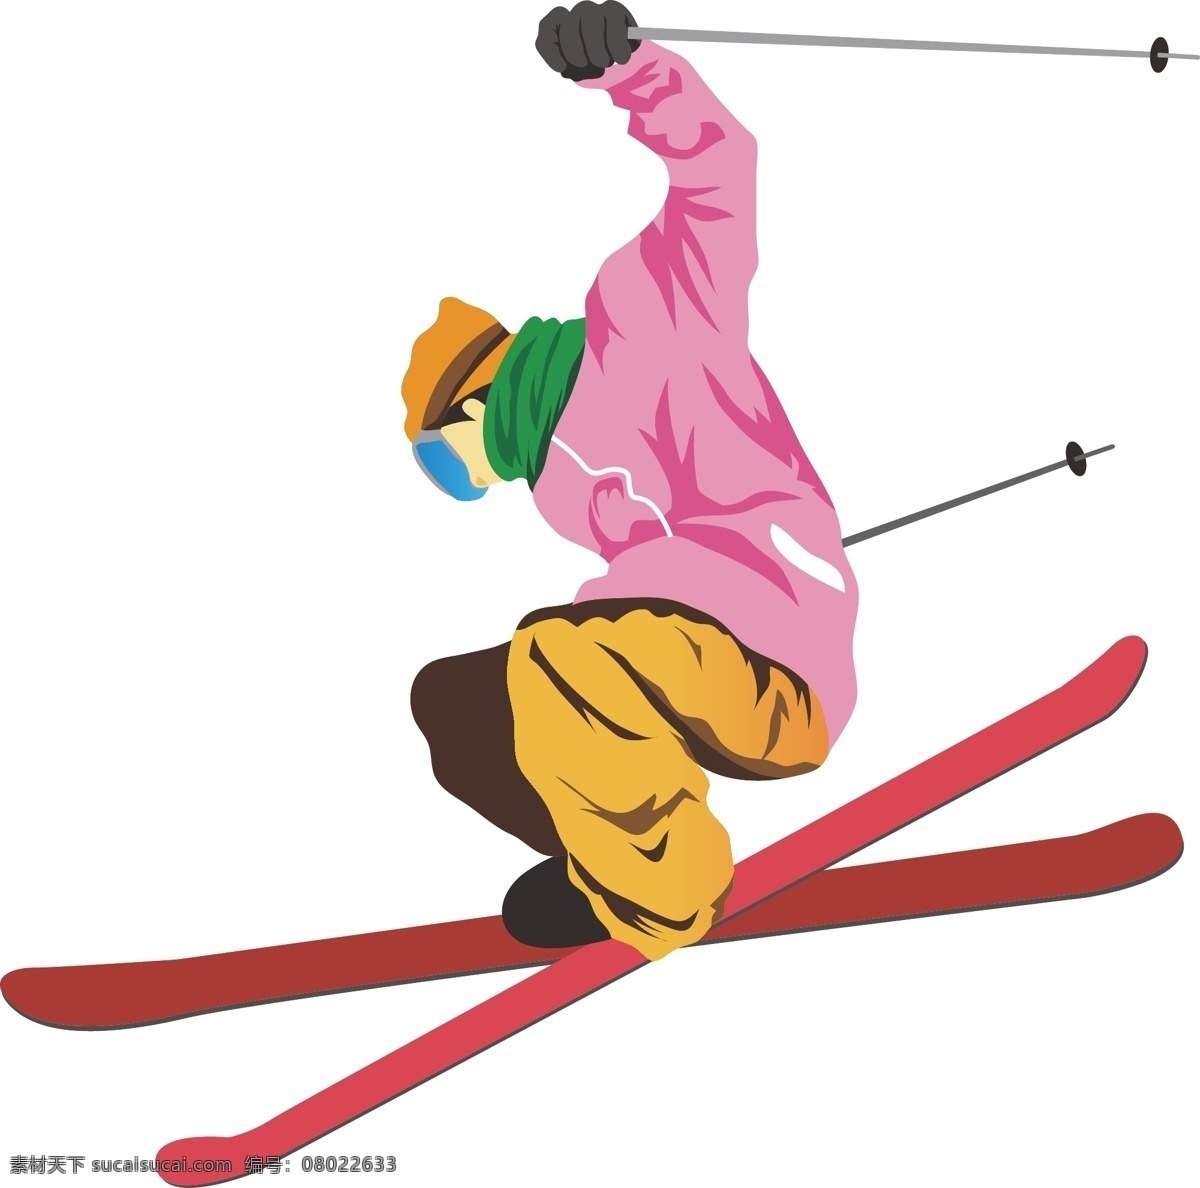 矢量运动项目 运动项目 运动 矢量人物 赛马 举重 刺剑 游泳 划船 跳高 自行车 高尔夫 滑冰 棒球 跳伞 乒乓球 各种运动项目 运动矢量图 职业人物 健身运动 瑜伽 动漫动画